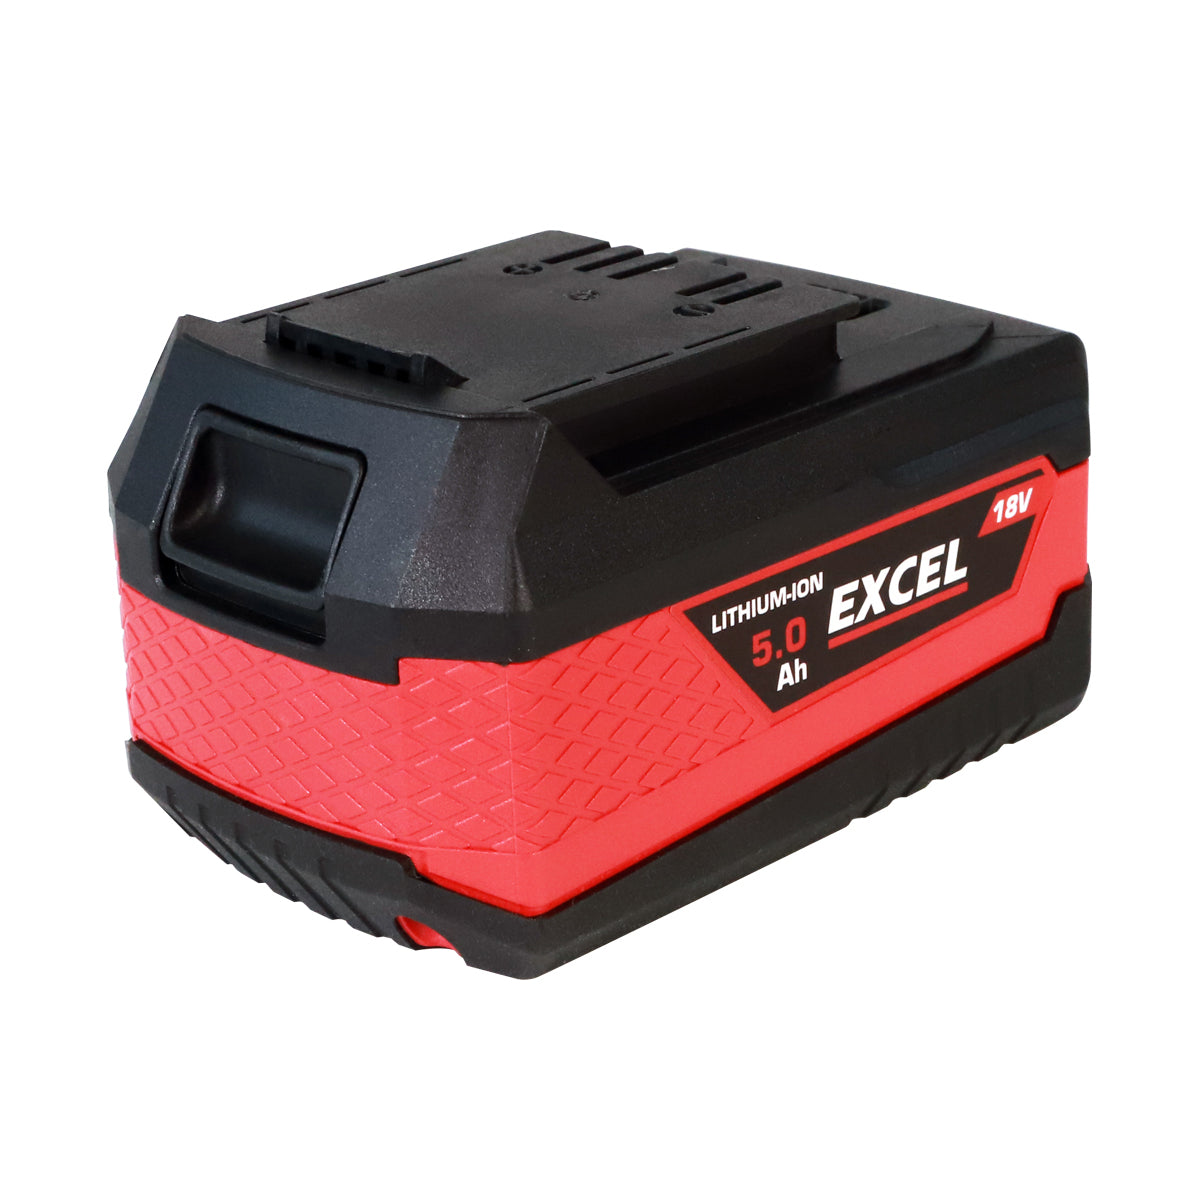 Excel 18V Grass Trimmer & Hedge Trimmer 2 x 5.0Ah Batteries & Charger EXL14992